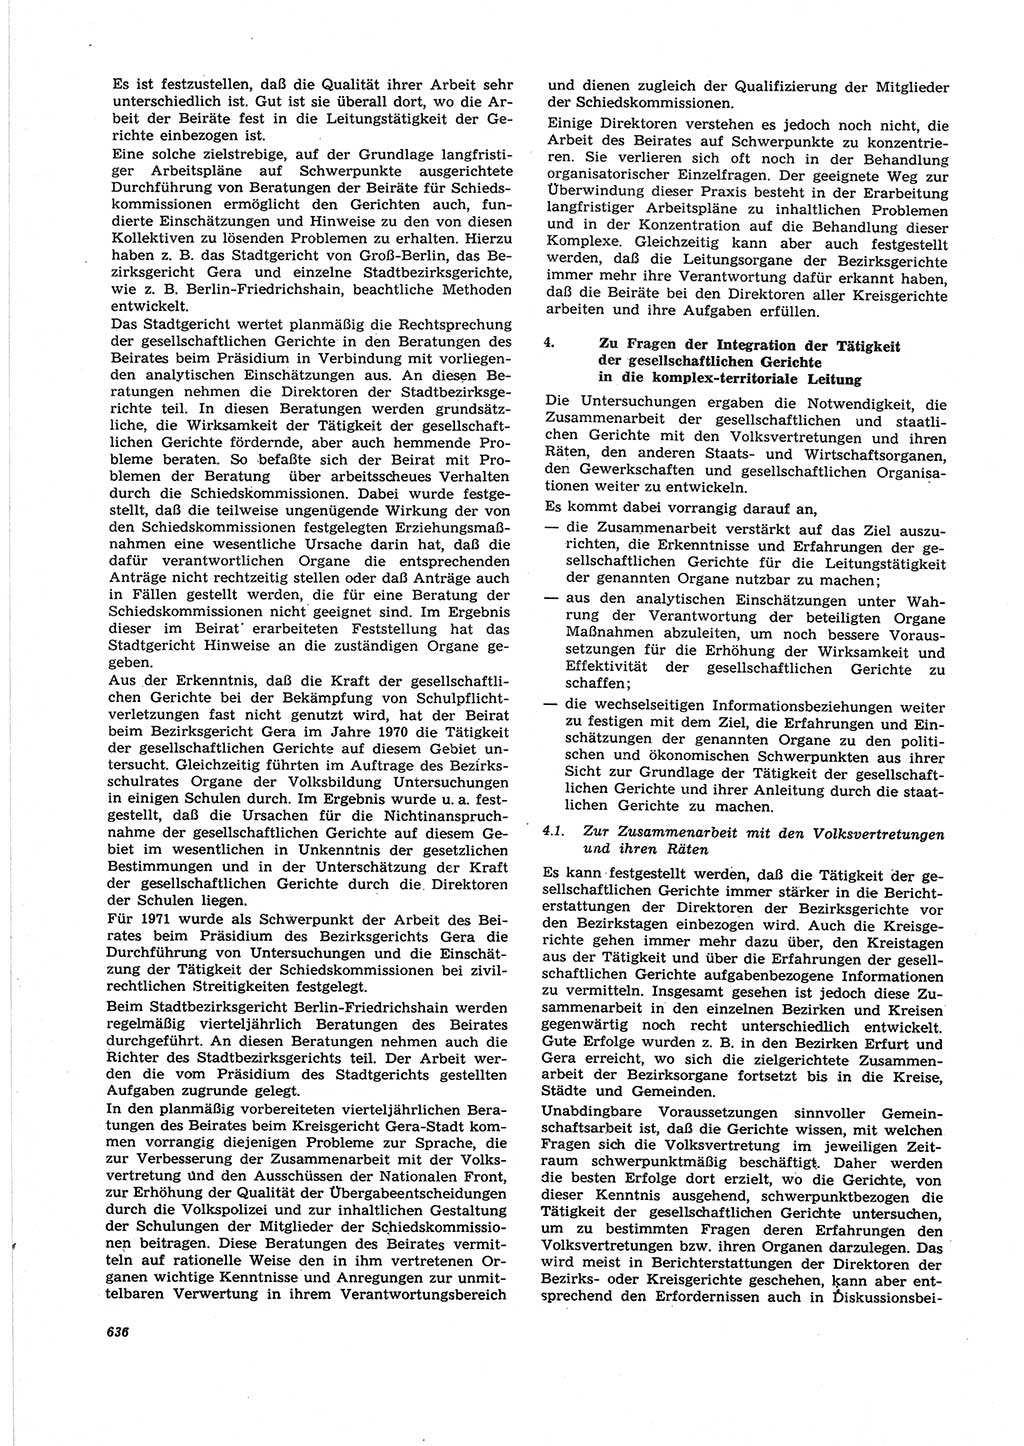 Neue Justiz (NJ), Zeitschrift für Recht und Rechtswissenschaft [Deutsche Demokratische Republik (DDR)], 25. Jahrgang 1971, Seite 636 (NJ DDR 1971, S. 636)